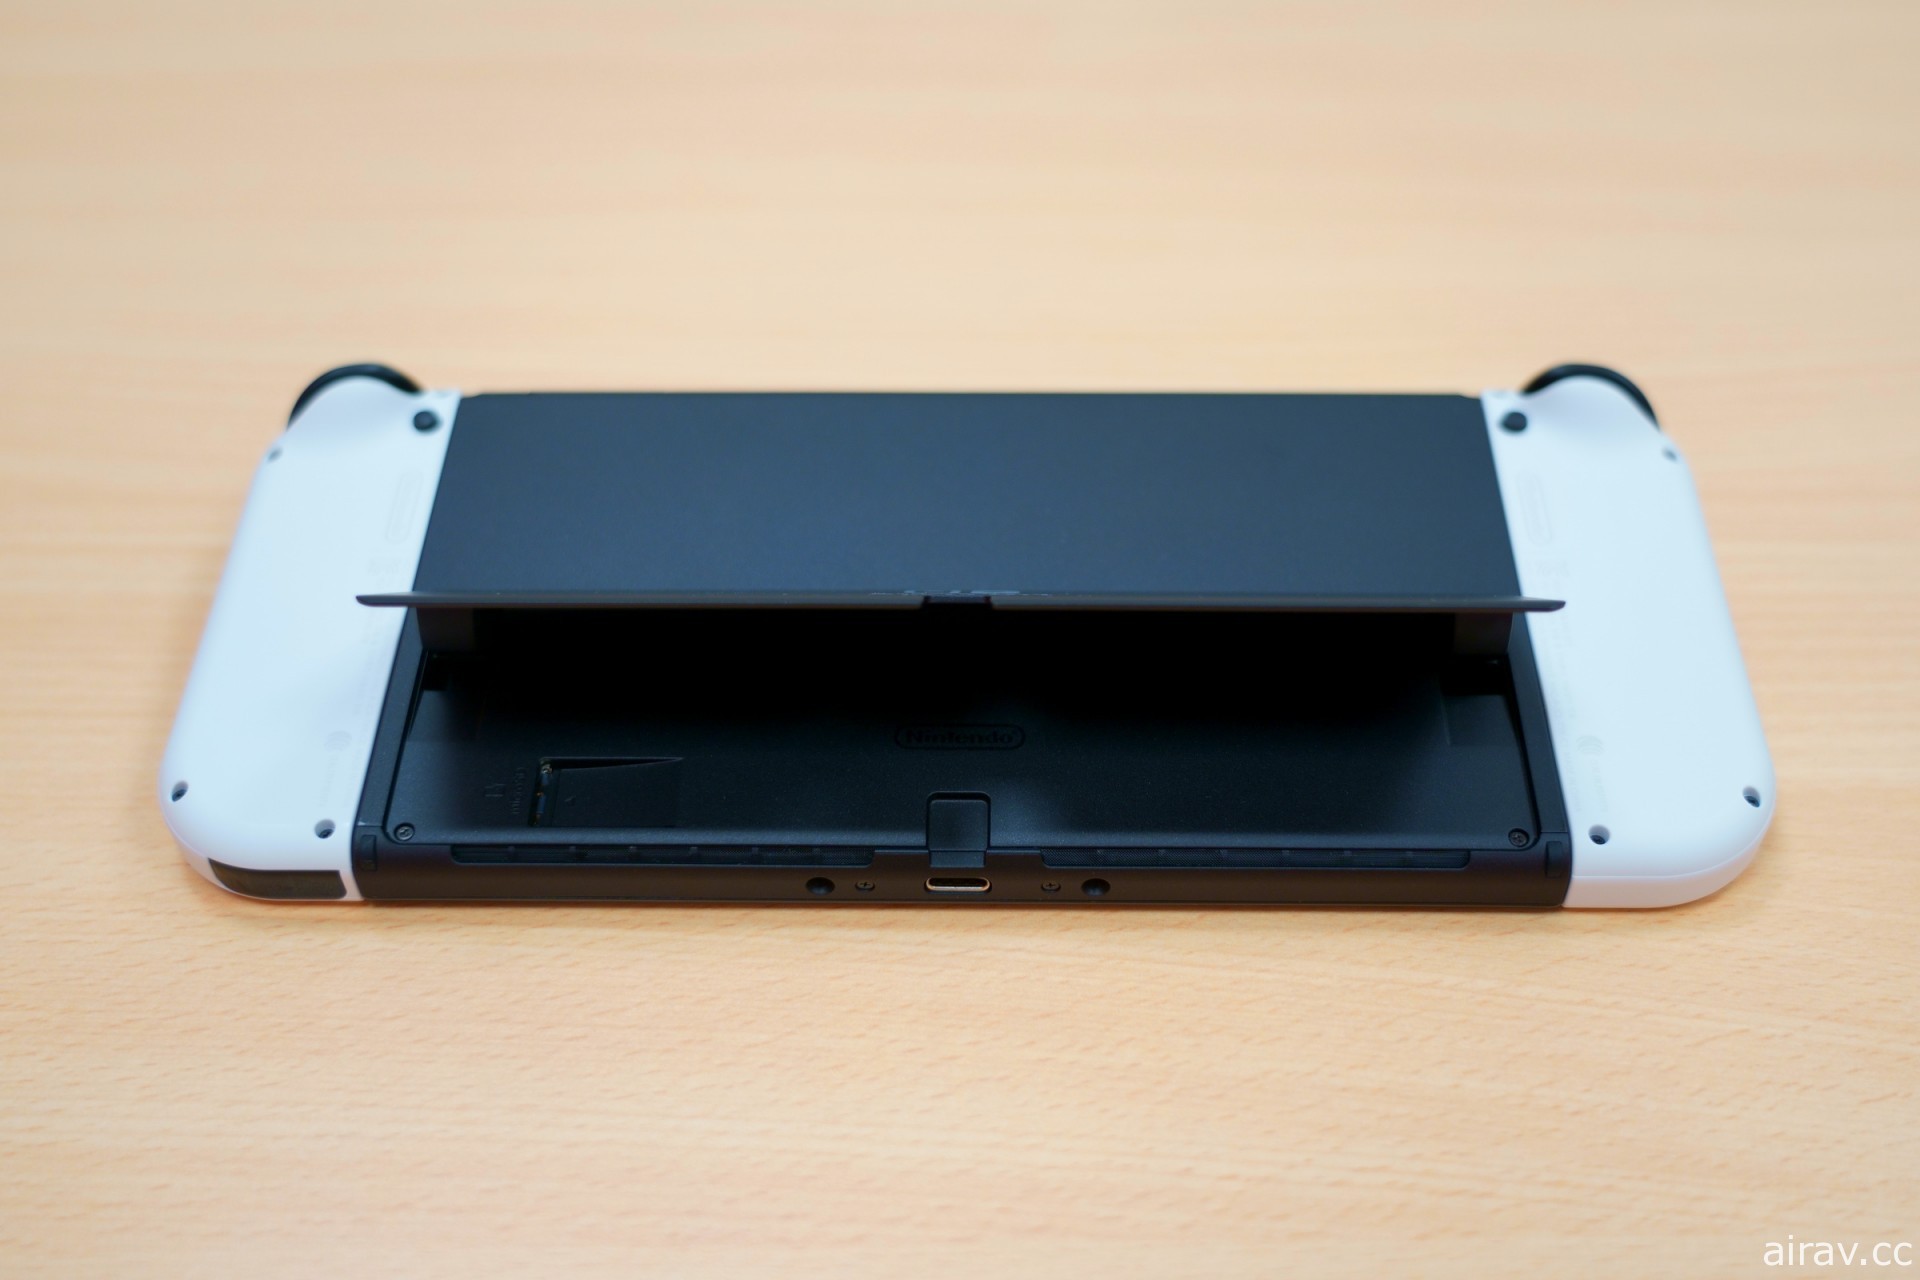 新型 Nintendo Switch OLED 主機搶先開箱報導 大幅提升攜帶遊玩體驗的正統進化